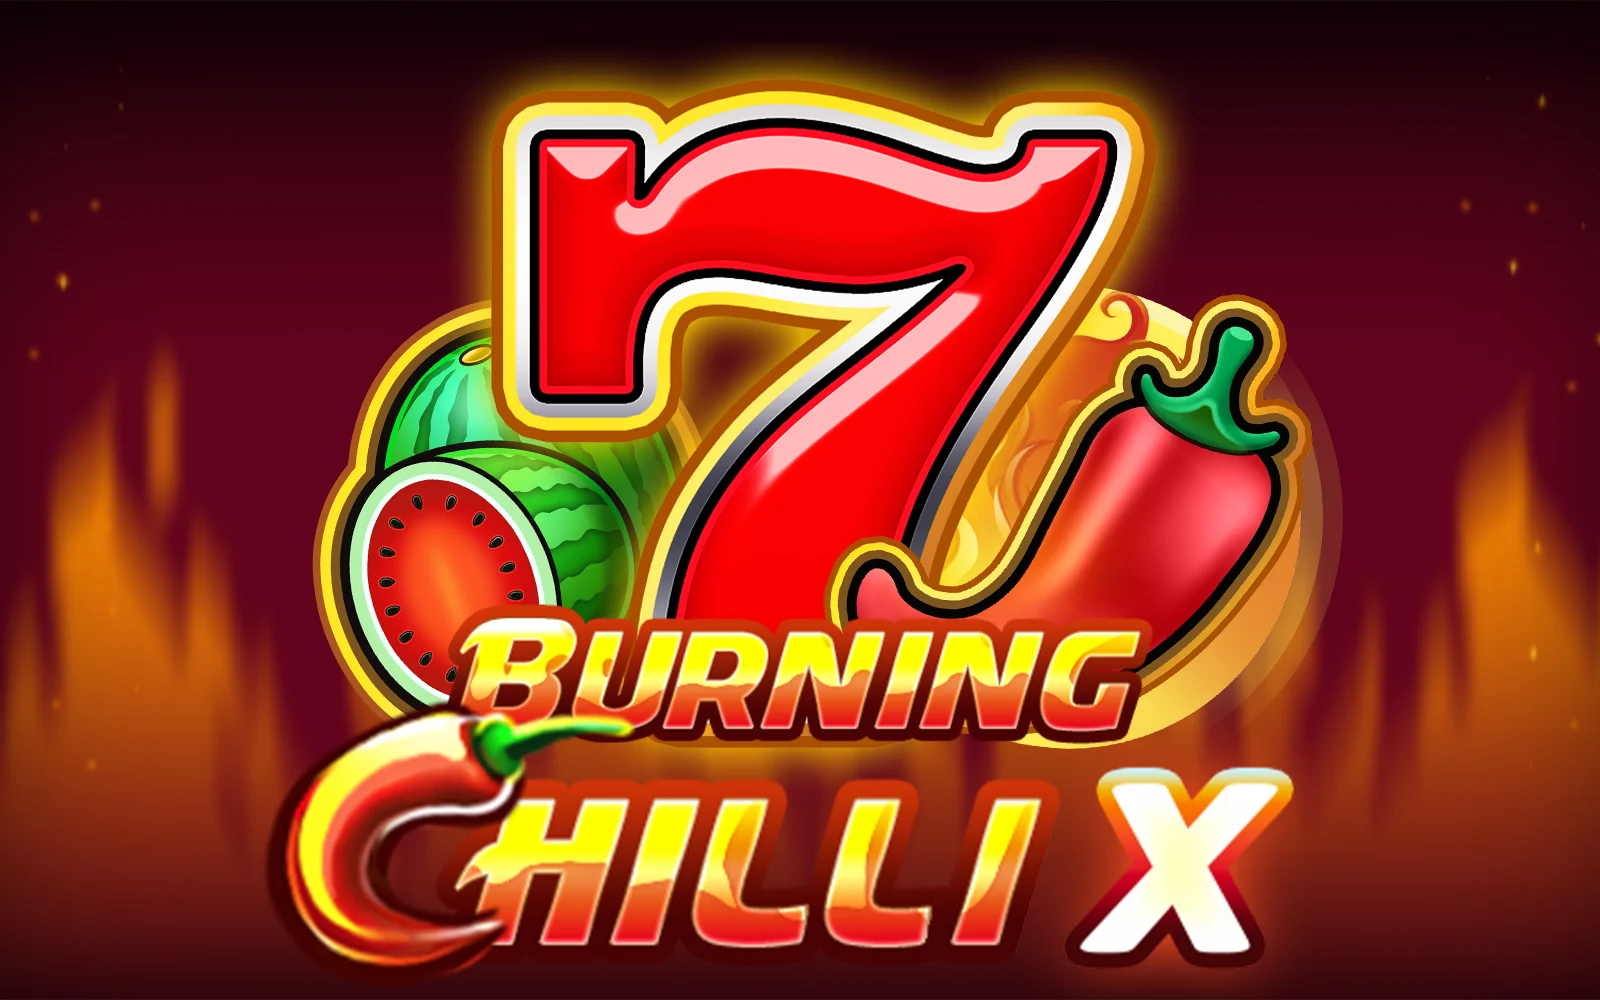 Zagraj w Burning Chilli X w kasynie online Starcasino.be